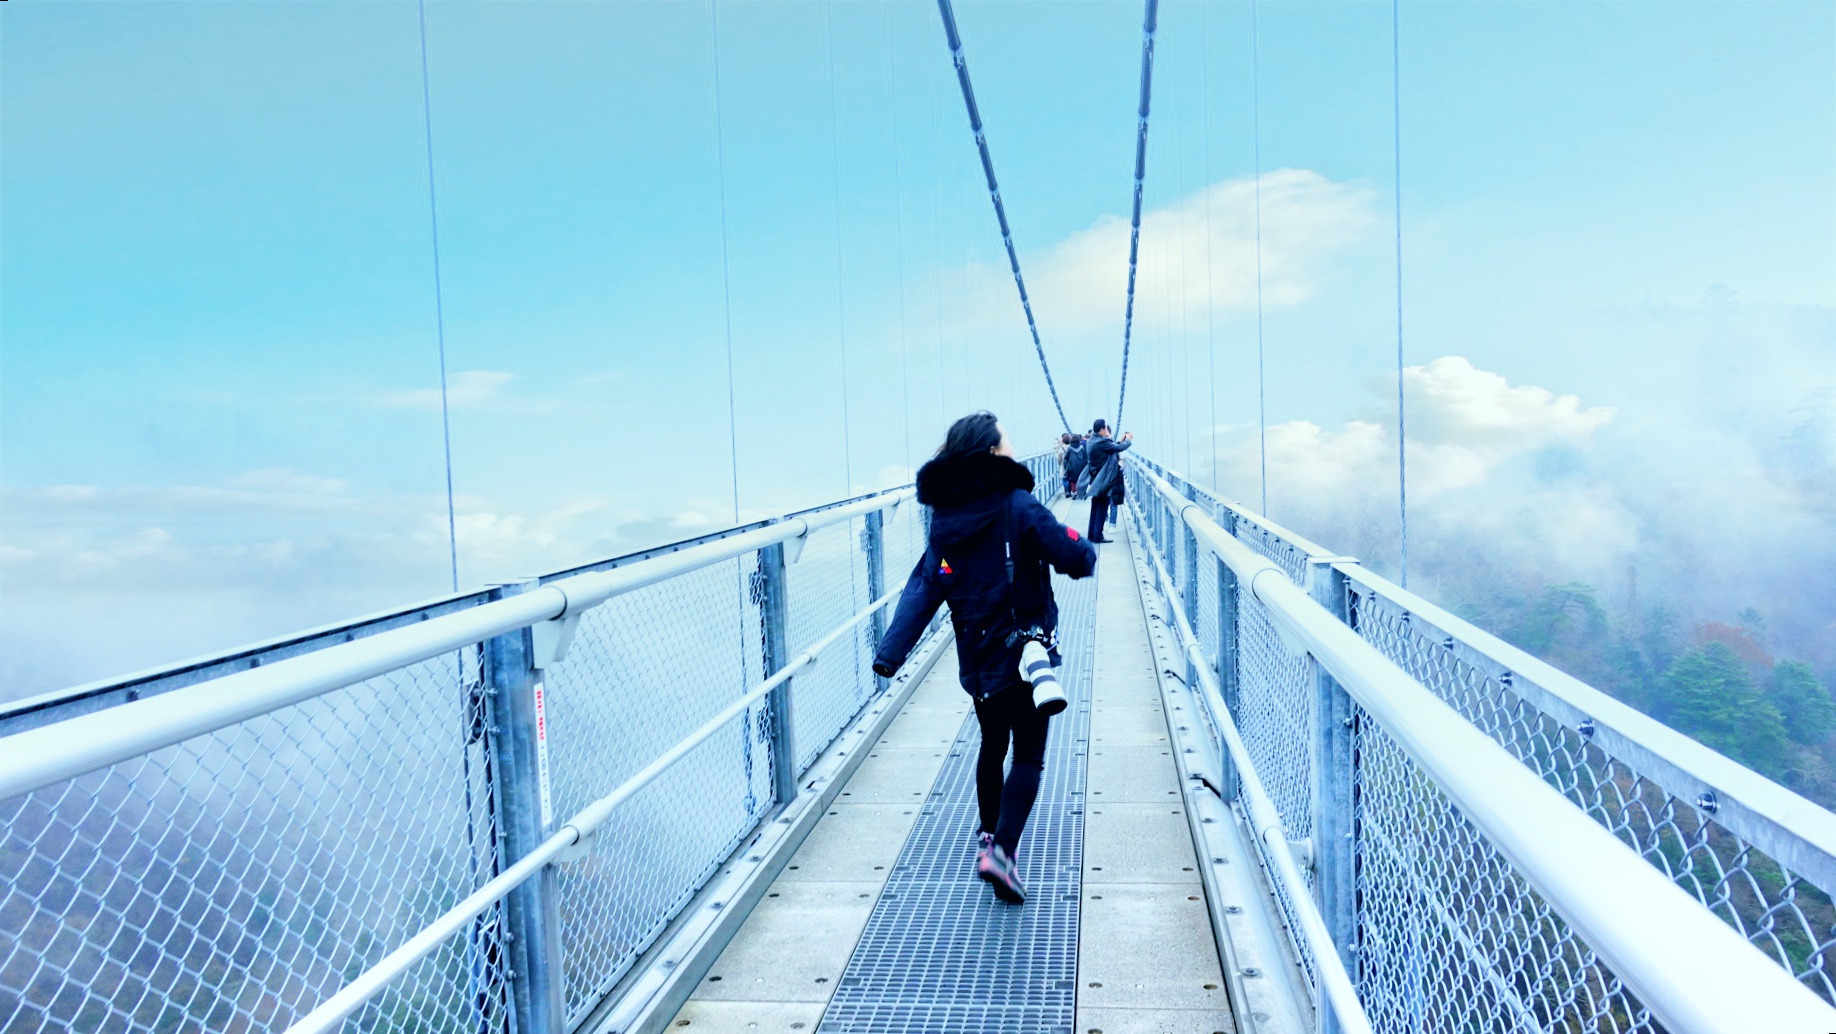 九重梦大吊桥，位于大分县中部的九重地区，悬在一百多米高空中，桥面是镂空设计，从网状桥面上隐隐约约可以